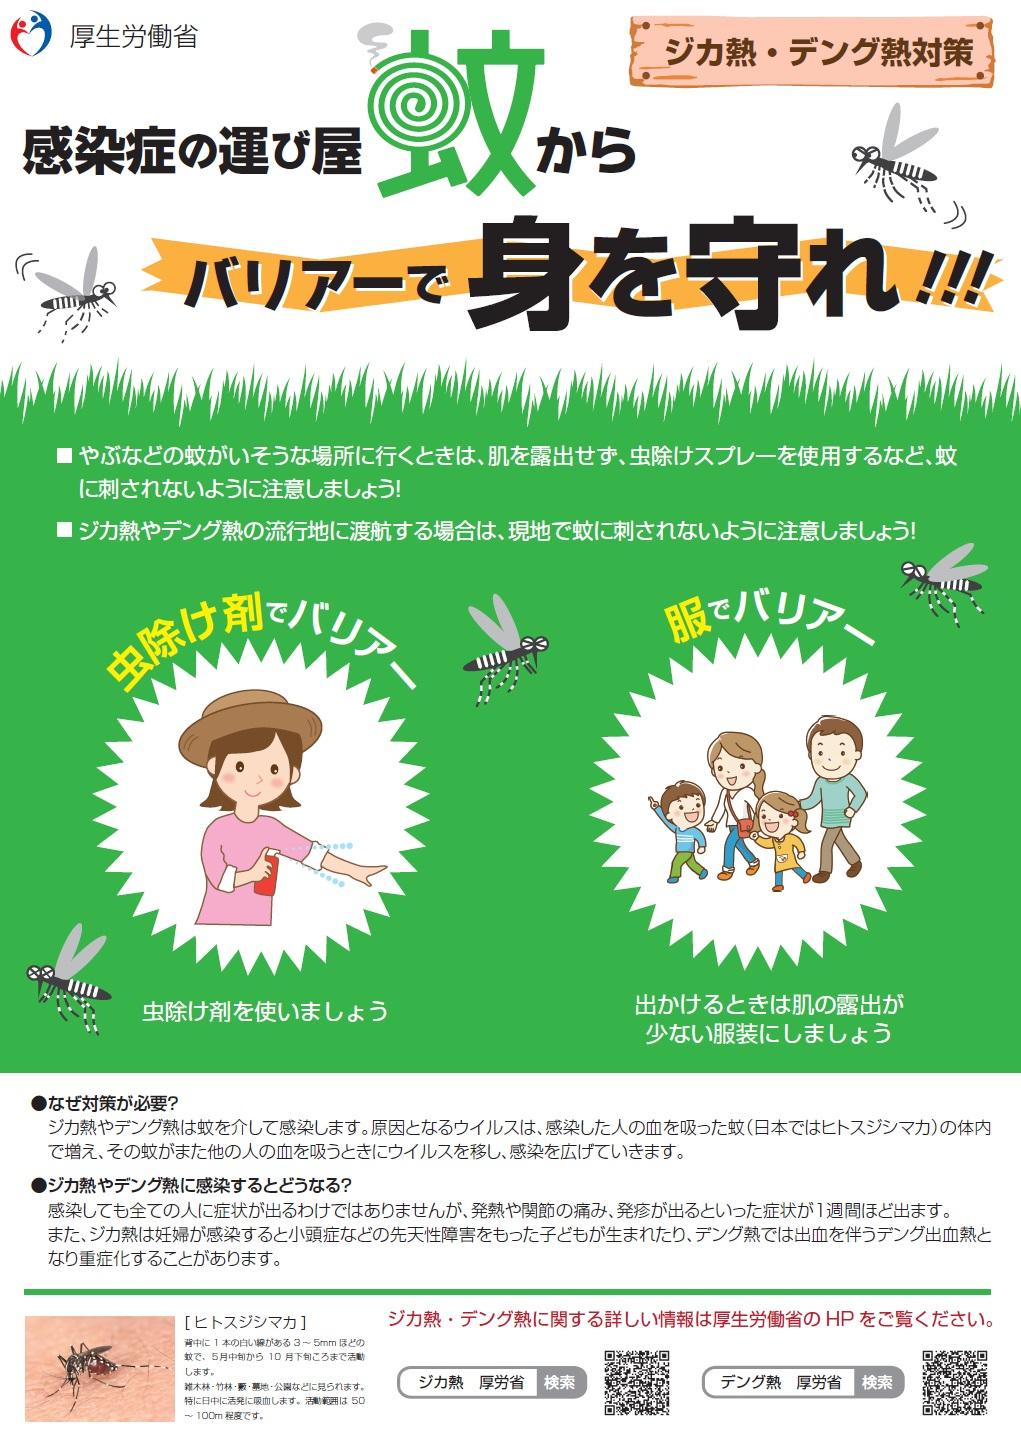 【用心編】感染症の運び屋 蚊からバリアーで身を守れ！のポスターの写真